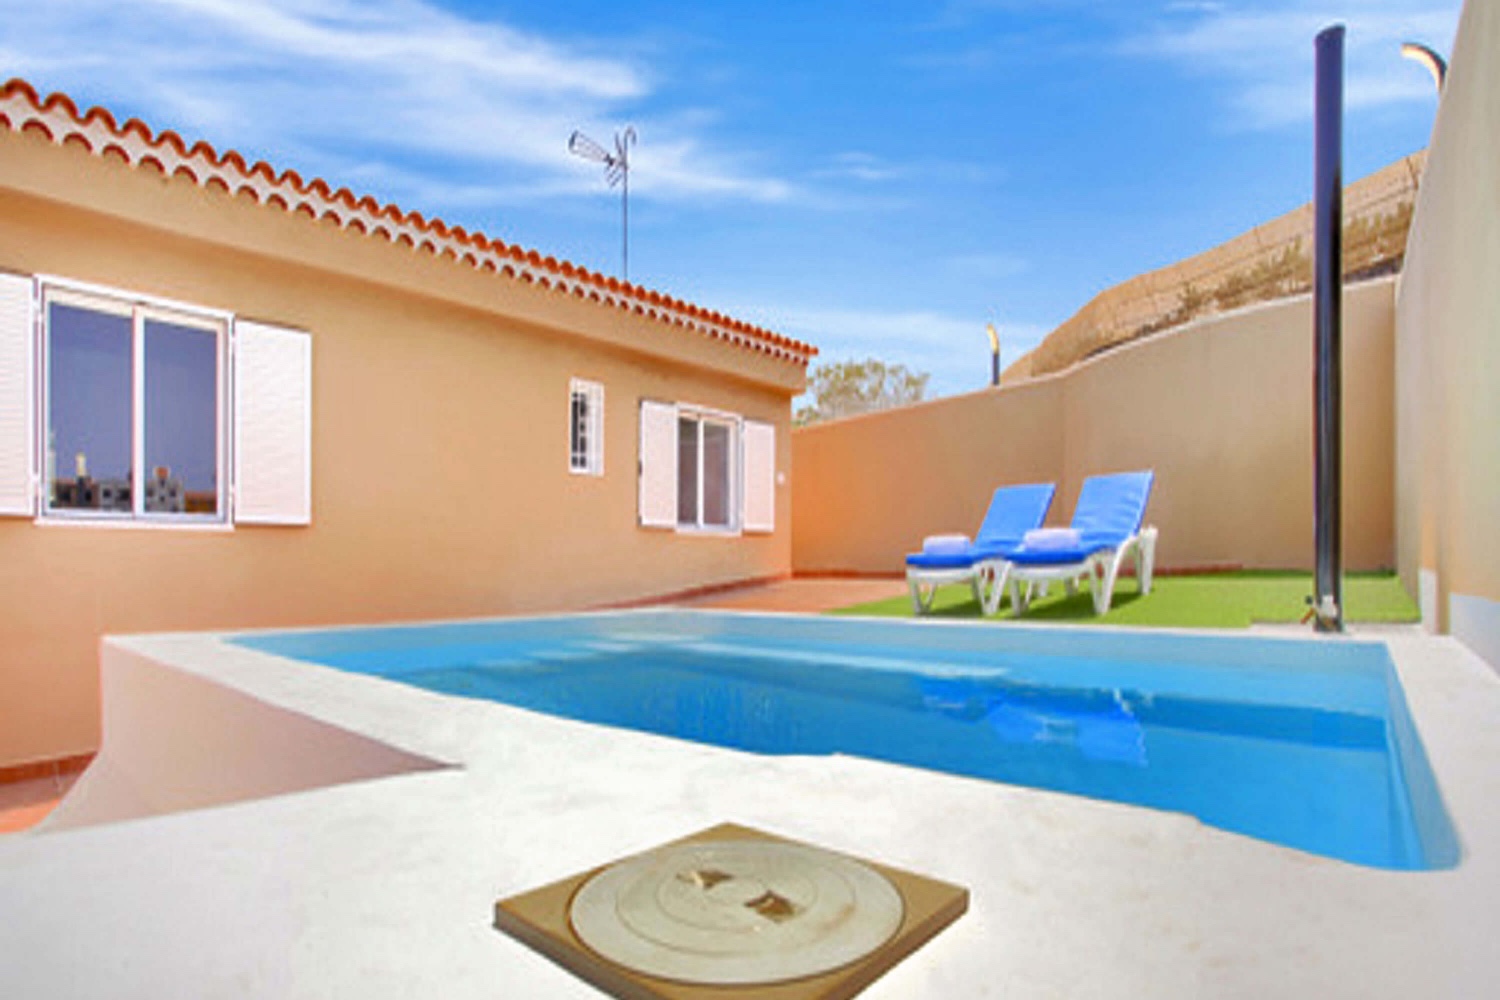 Schönes Einfamilienhaus mit privatem Pool in Guía de Isora, nur 1,5 km vom Strand von San Juán entfernt